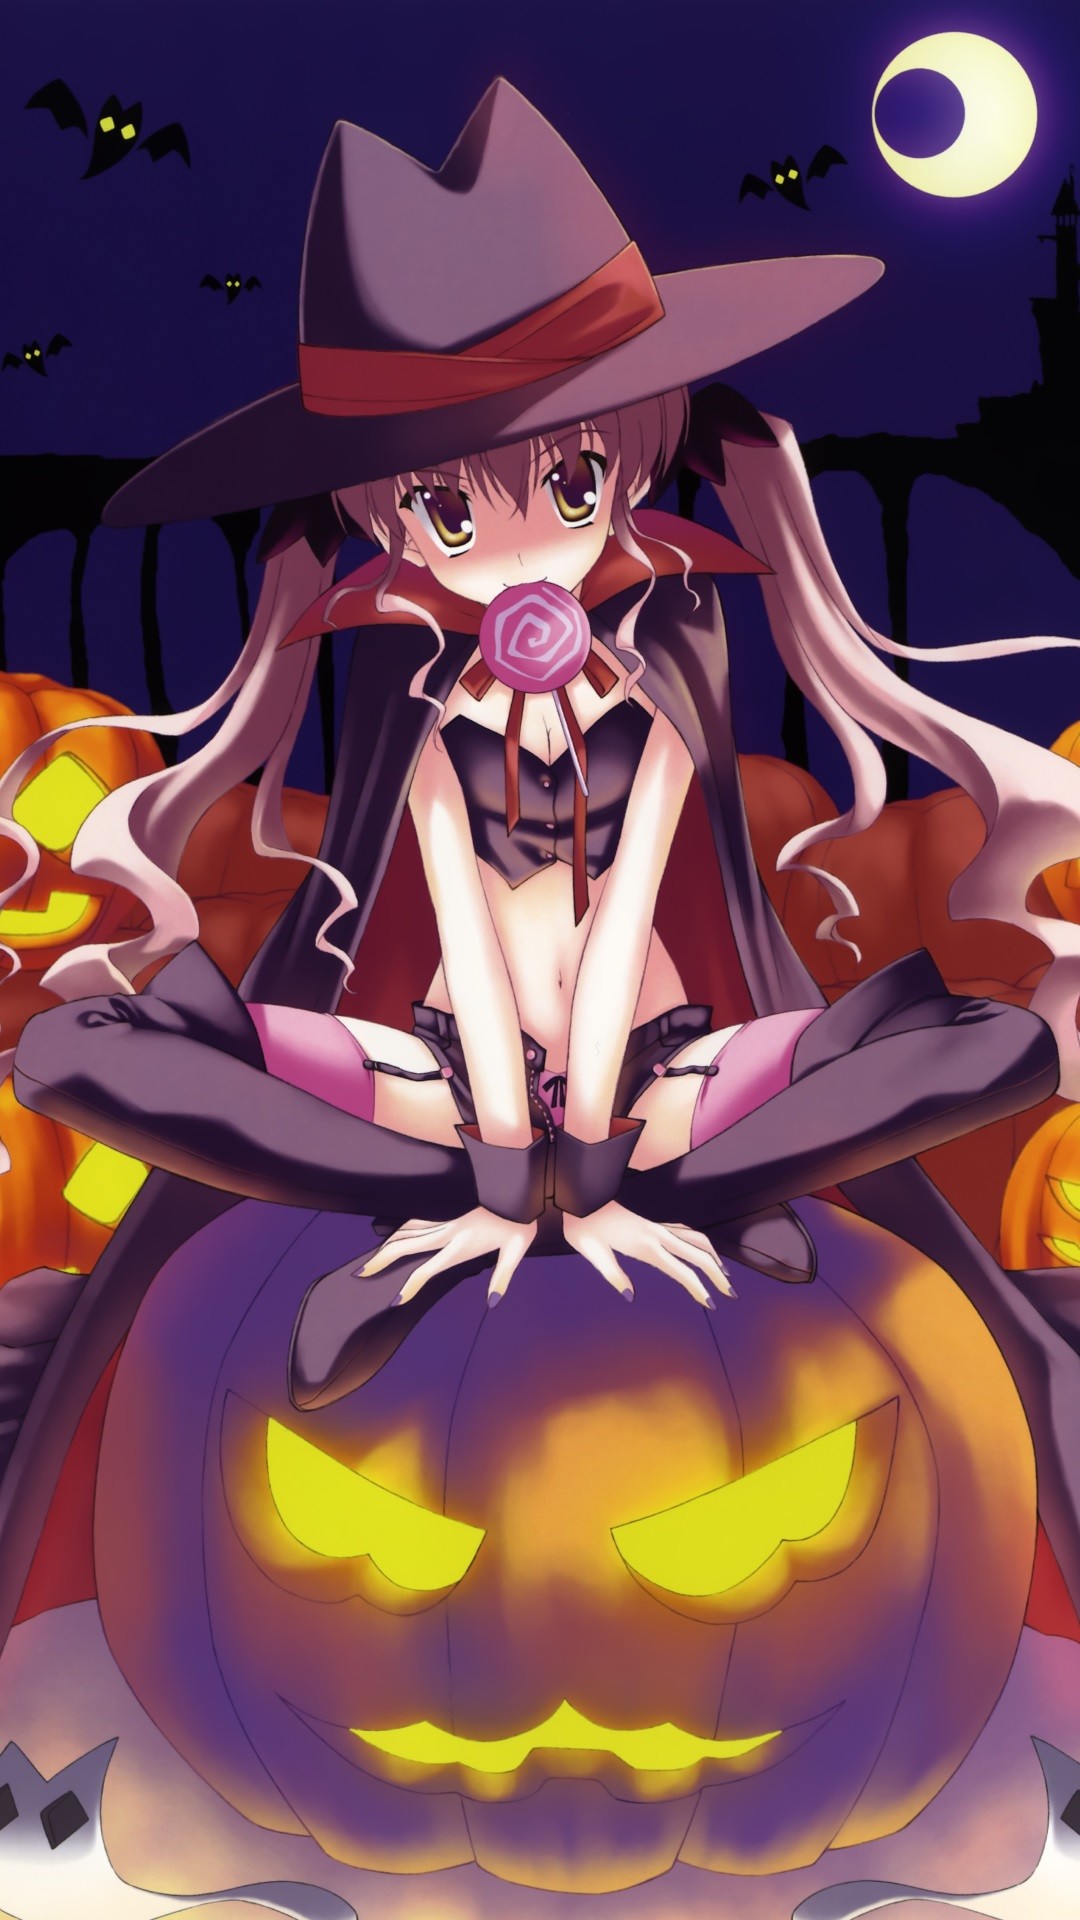 1080x1920 Halloween 2014 anime.Sony Xperia Z wallpaper.